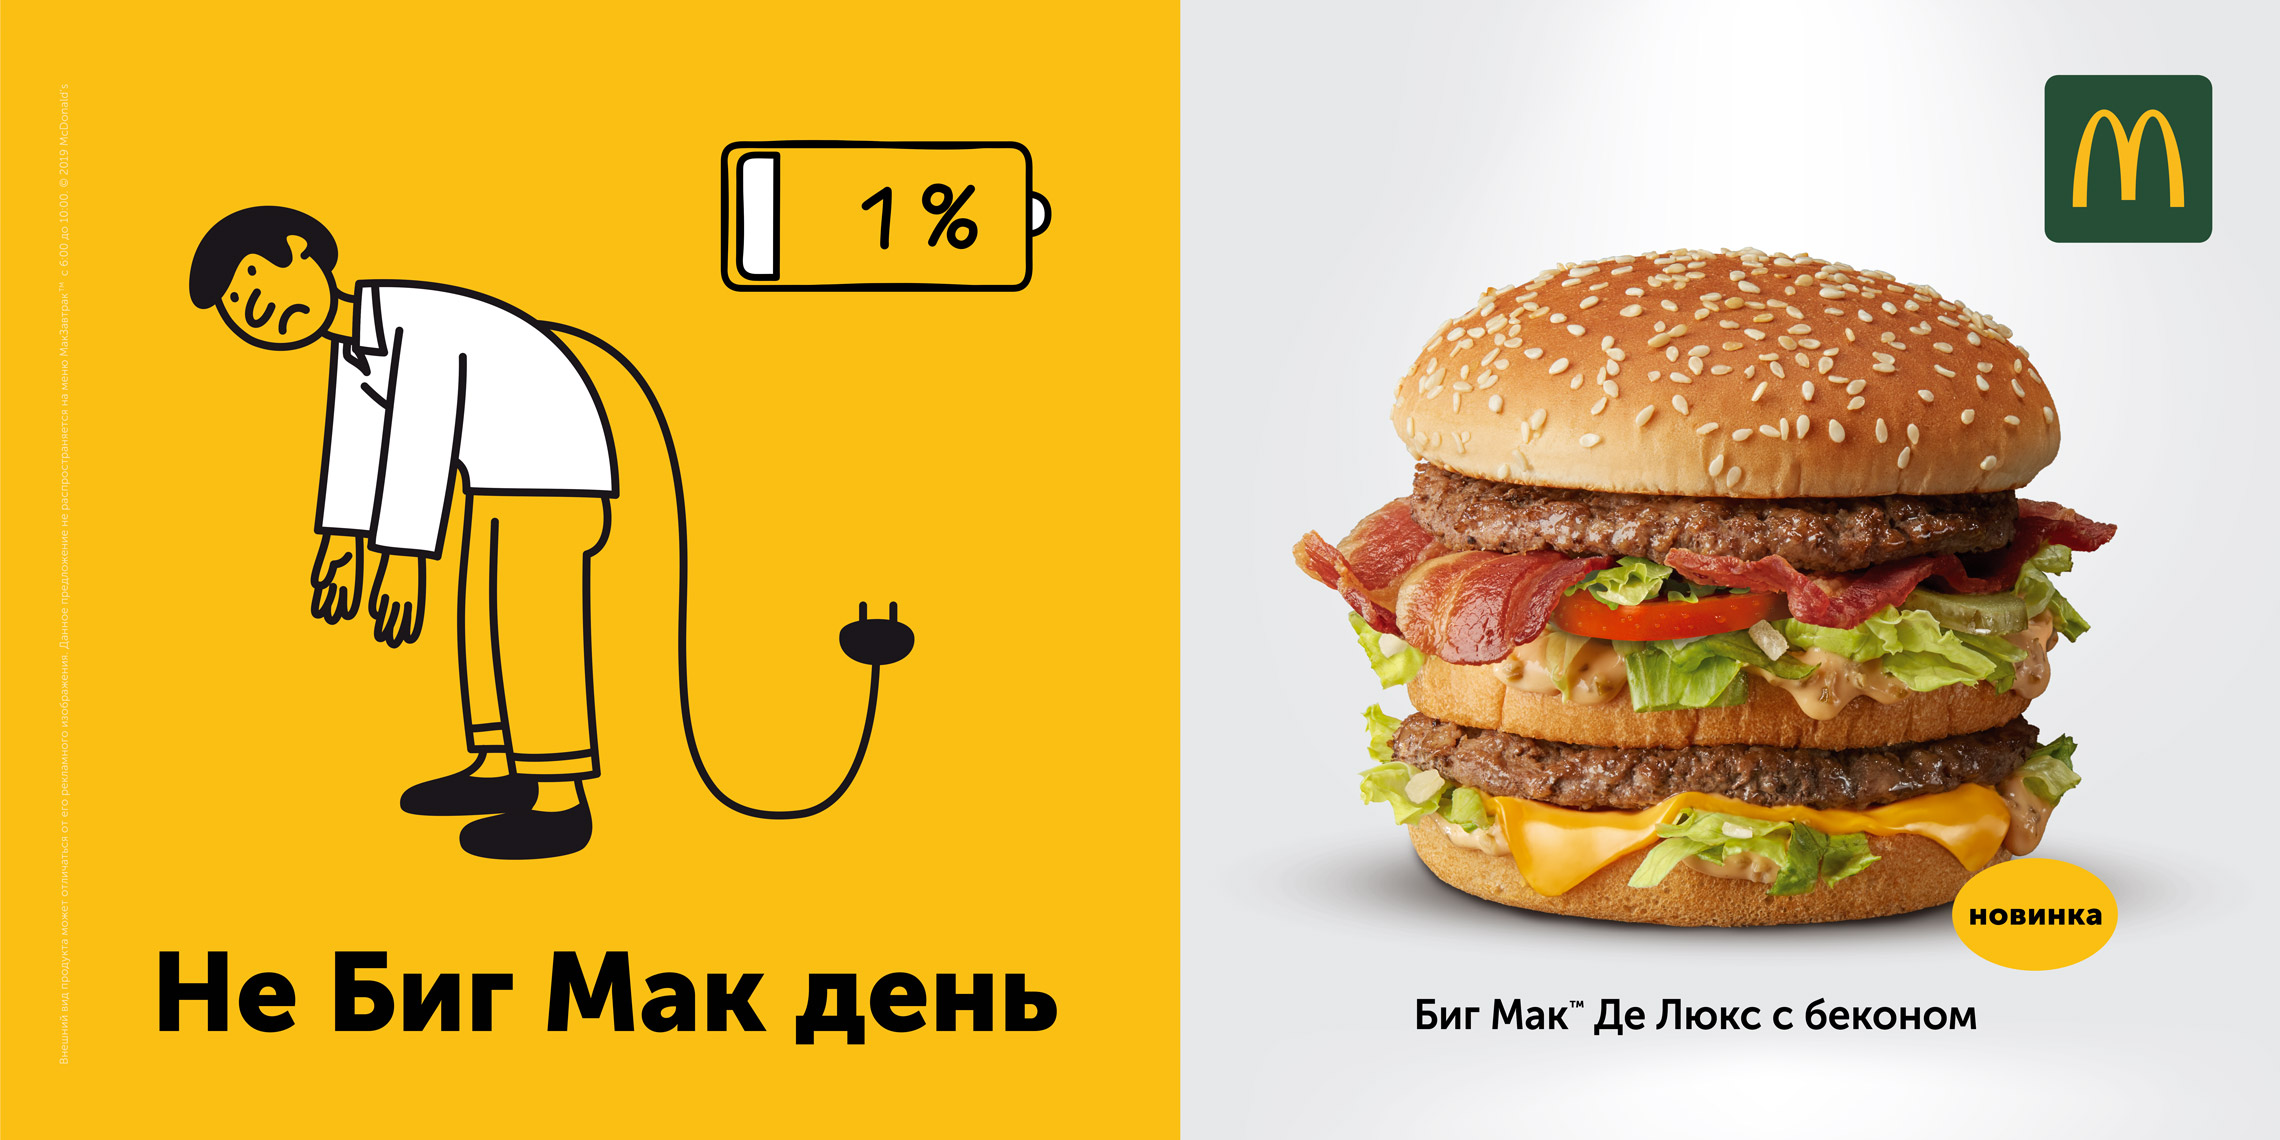 Рекламная кампания, Биг Мак, McDonald’s, Ambition DDB